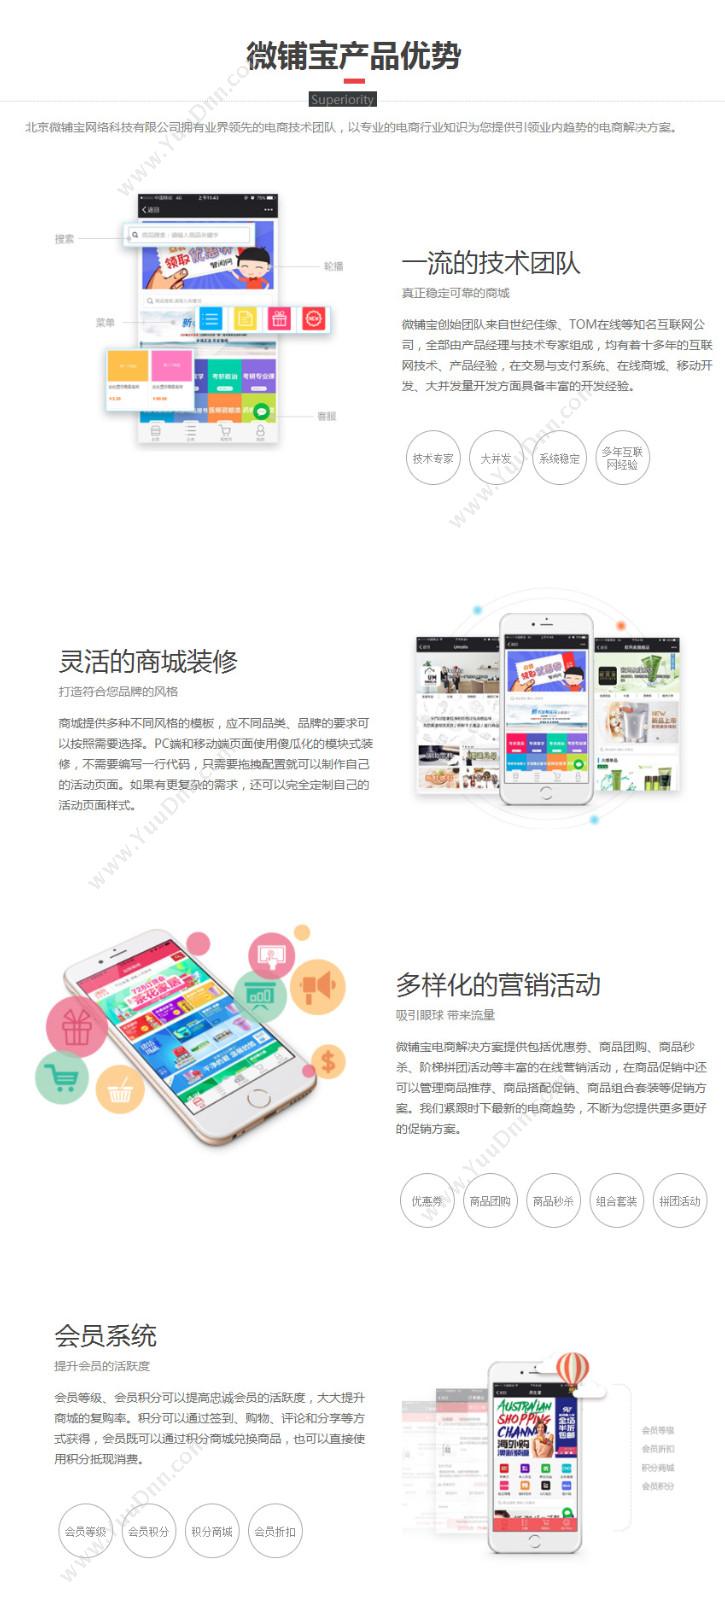 北京掌上先机网络科技有限公司 微铺宝 其它软件